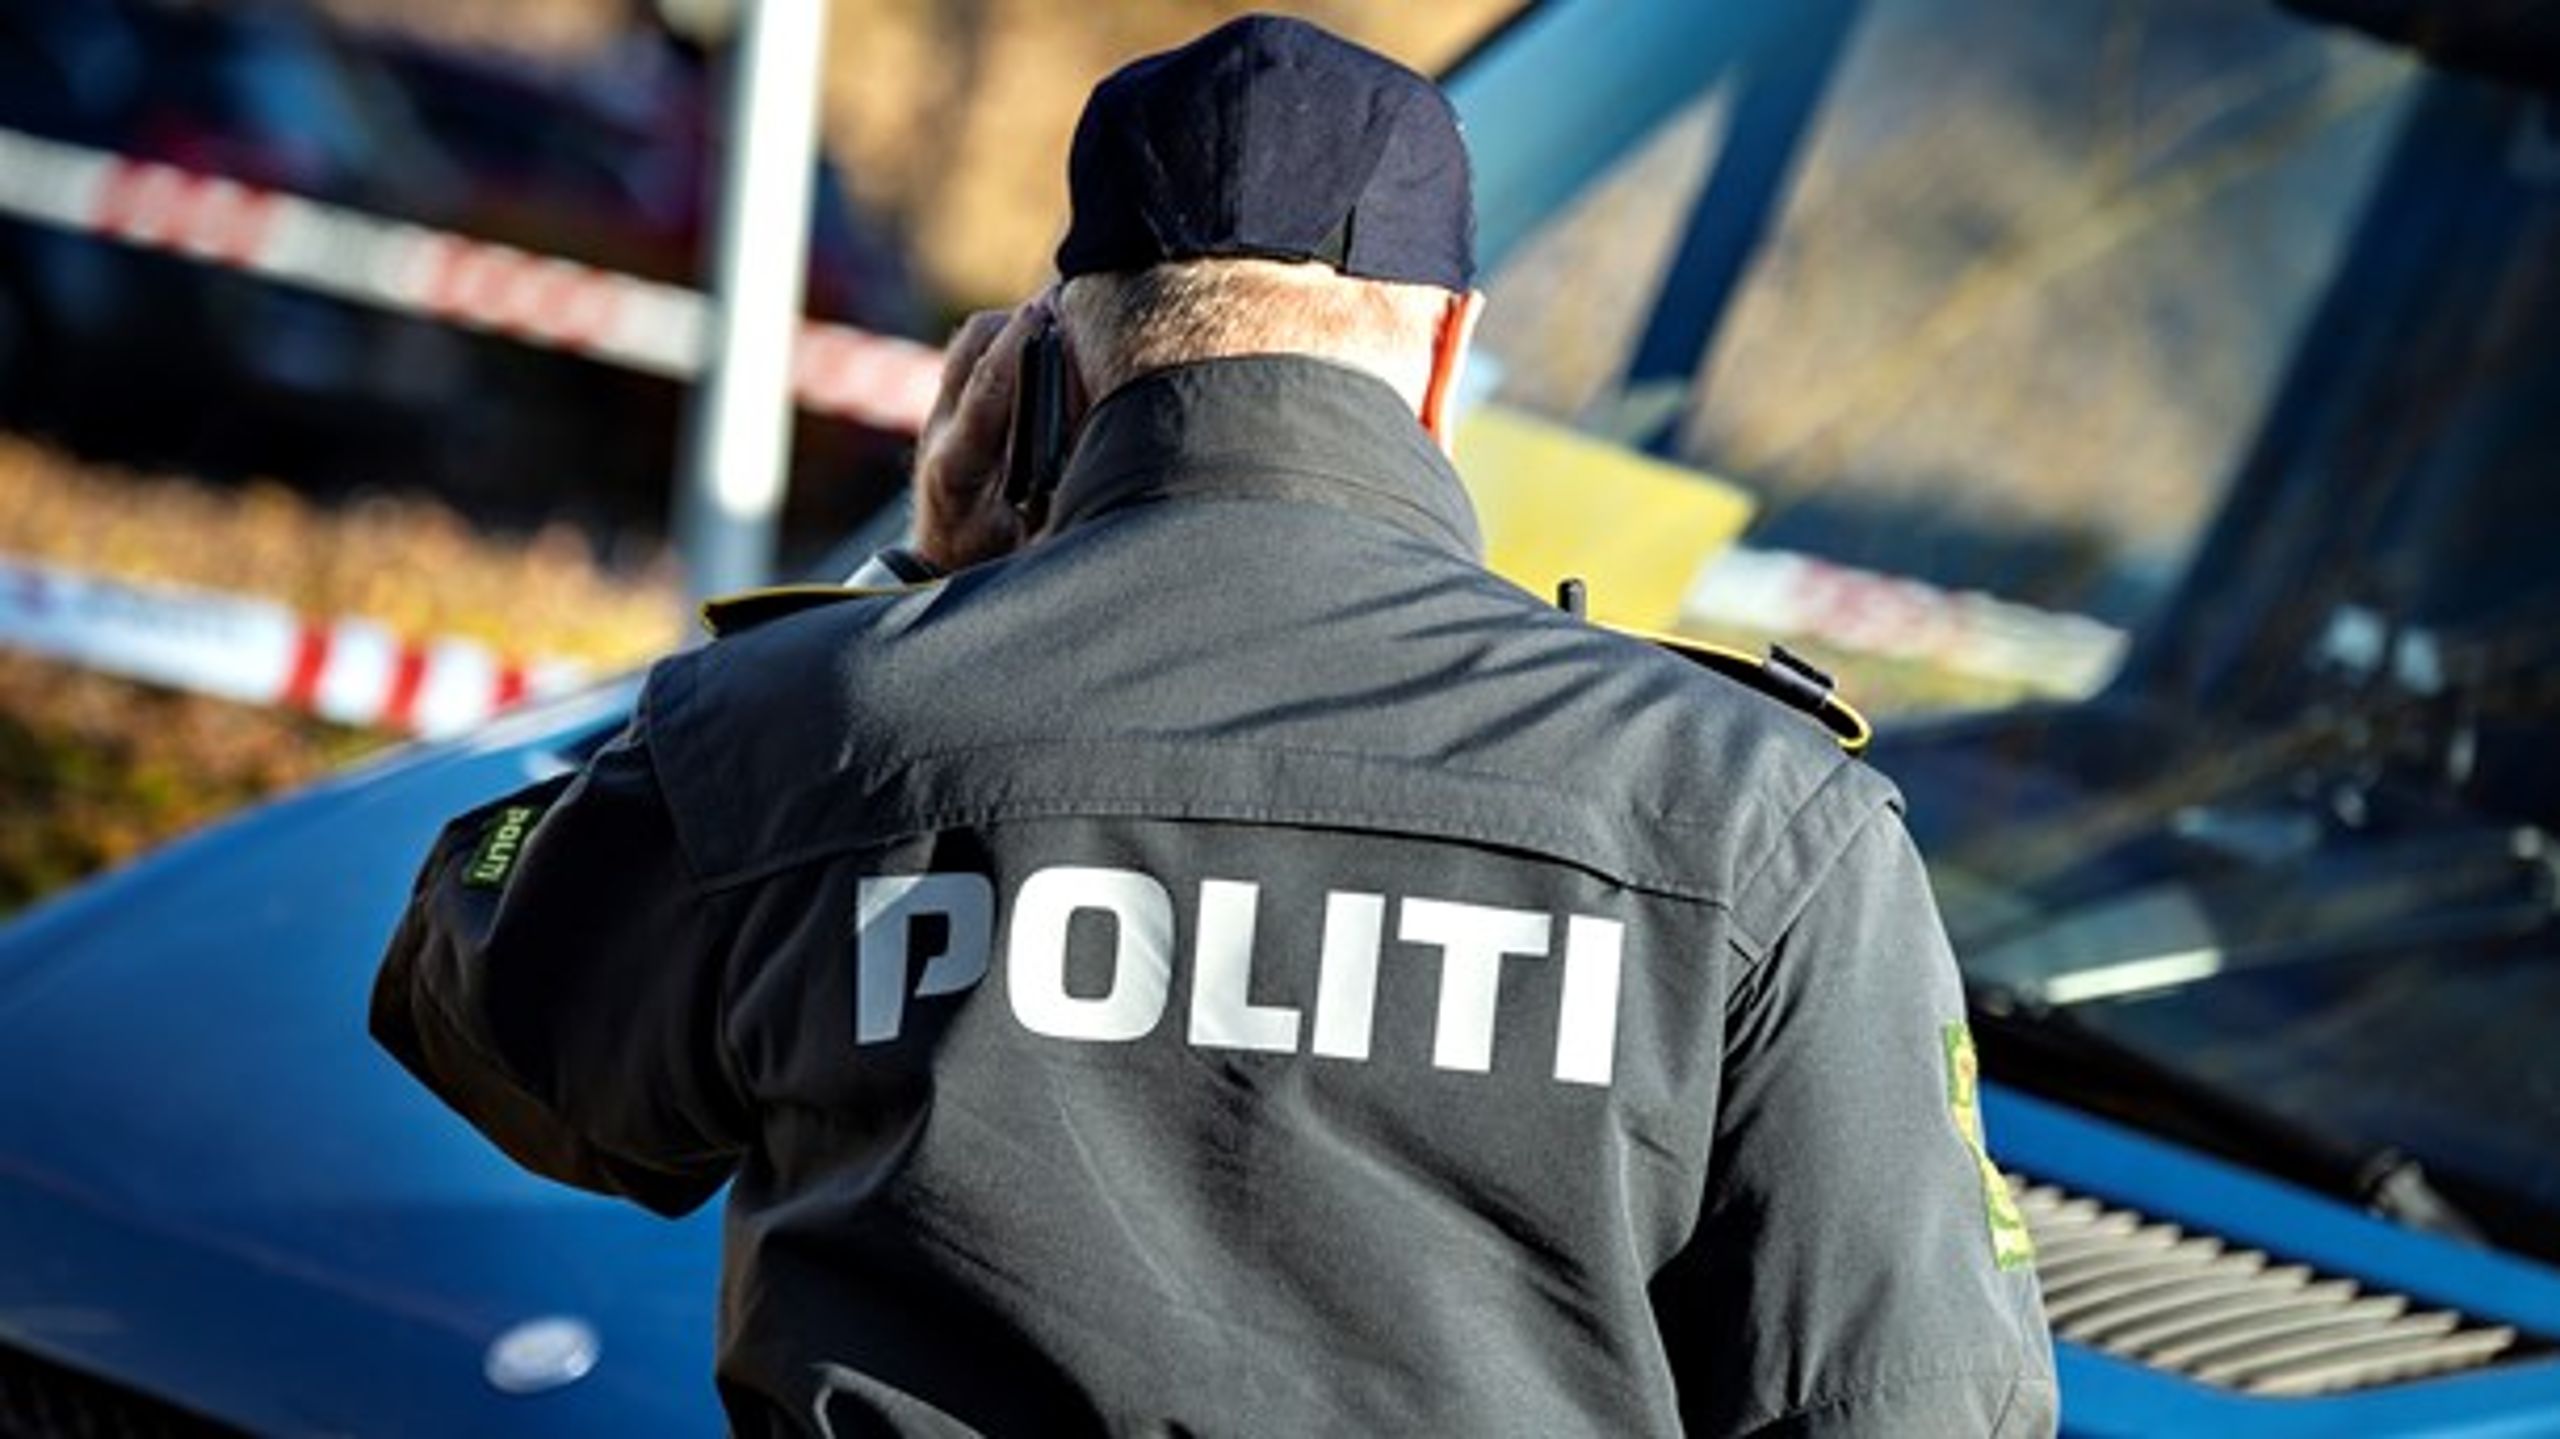 Mange danske politifolk arbejder i kortere eller længere periode i Grønland, men forskel i arbejdsvilkår kan skabe utilfredshed, mener forfatterne.&nbsp;